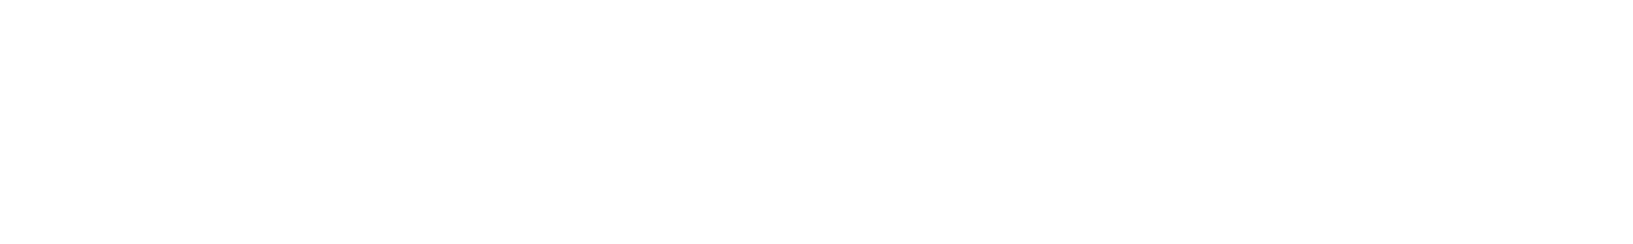 Cambium Networks Logo groß für dunkle Hintergründe (transparentes PNG)